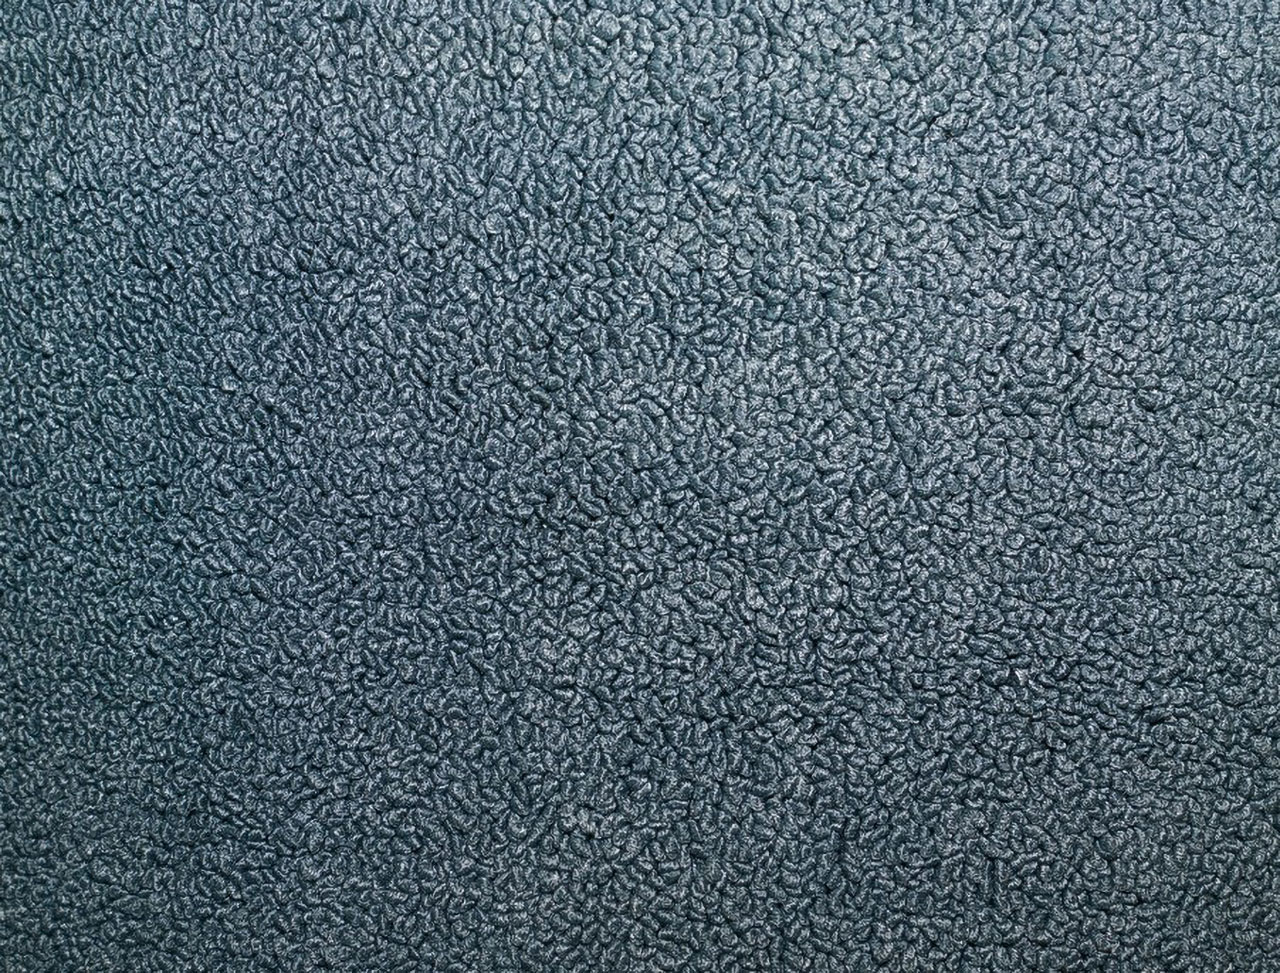 Holden Kingswood HK Kingswood Sedan 14L Jacana Blue & Castillion Weave Carpet (Image 1 of 1)